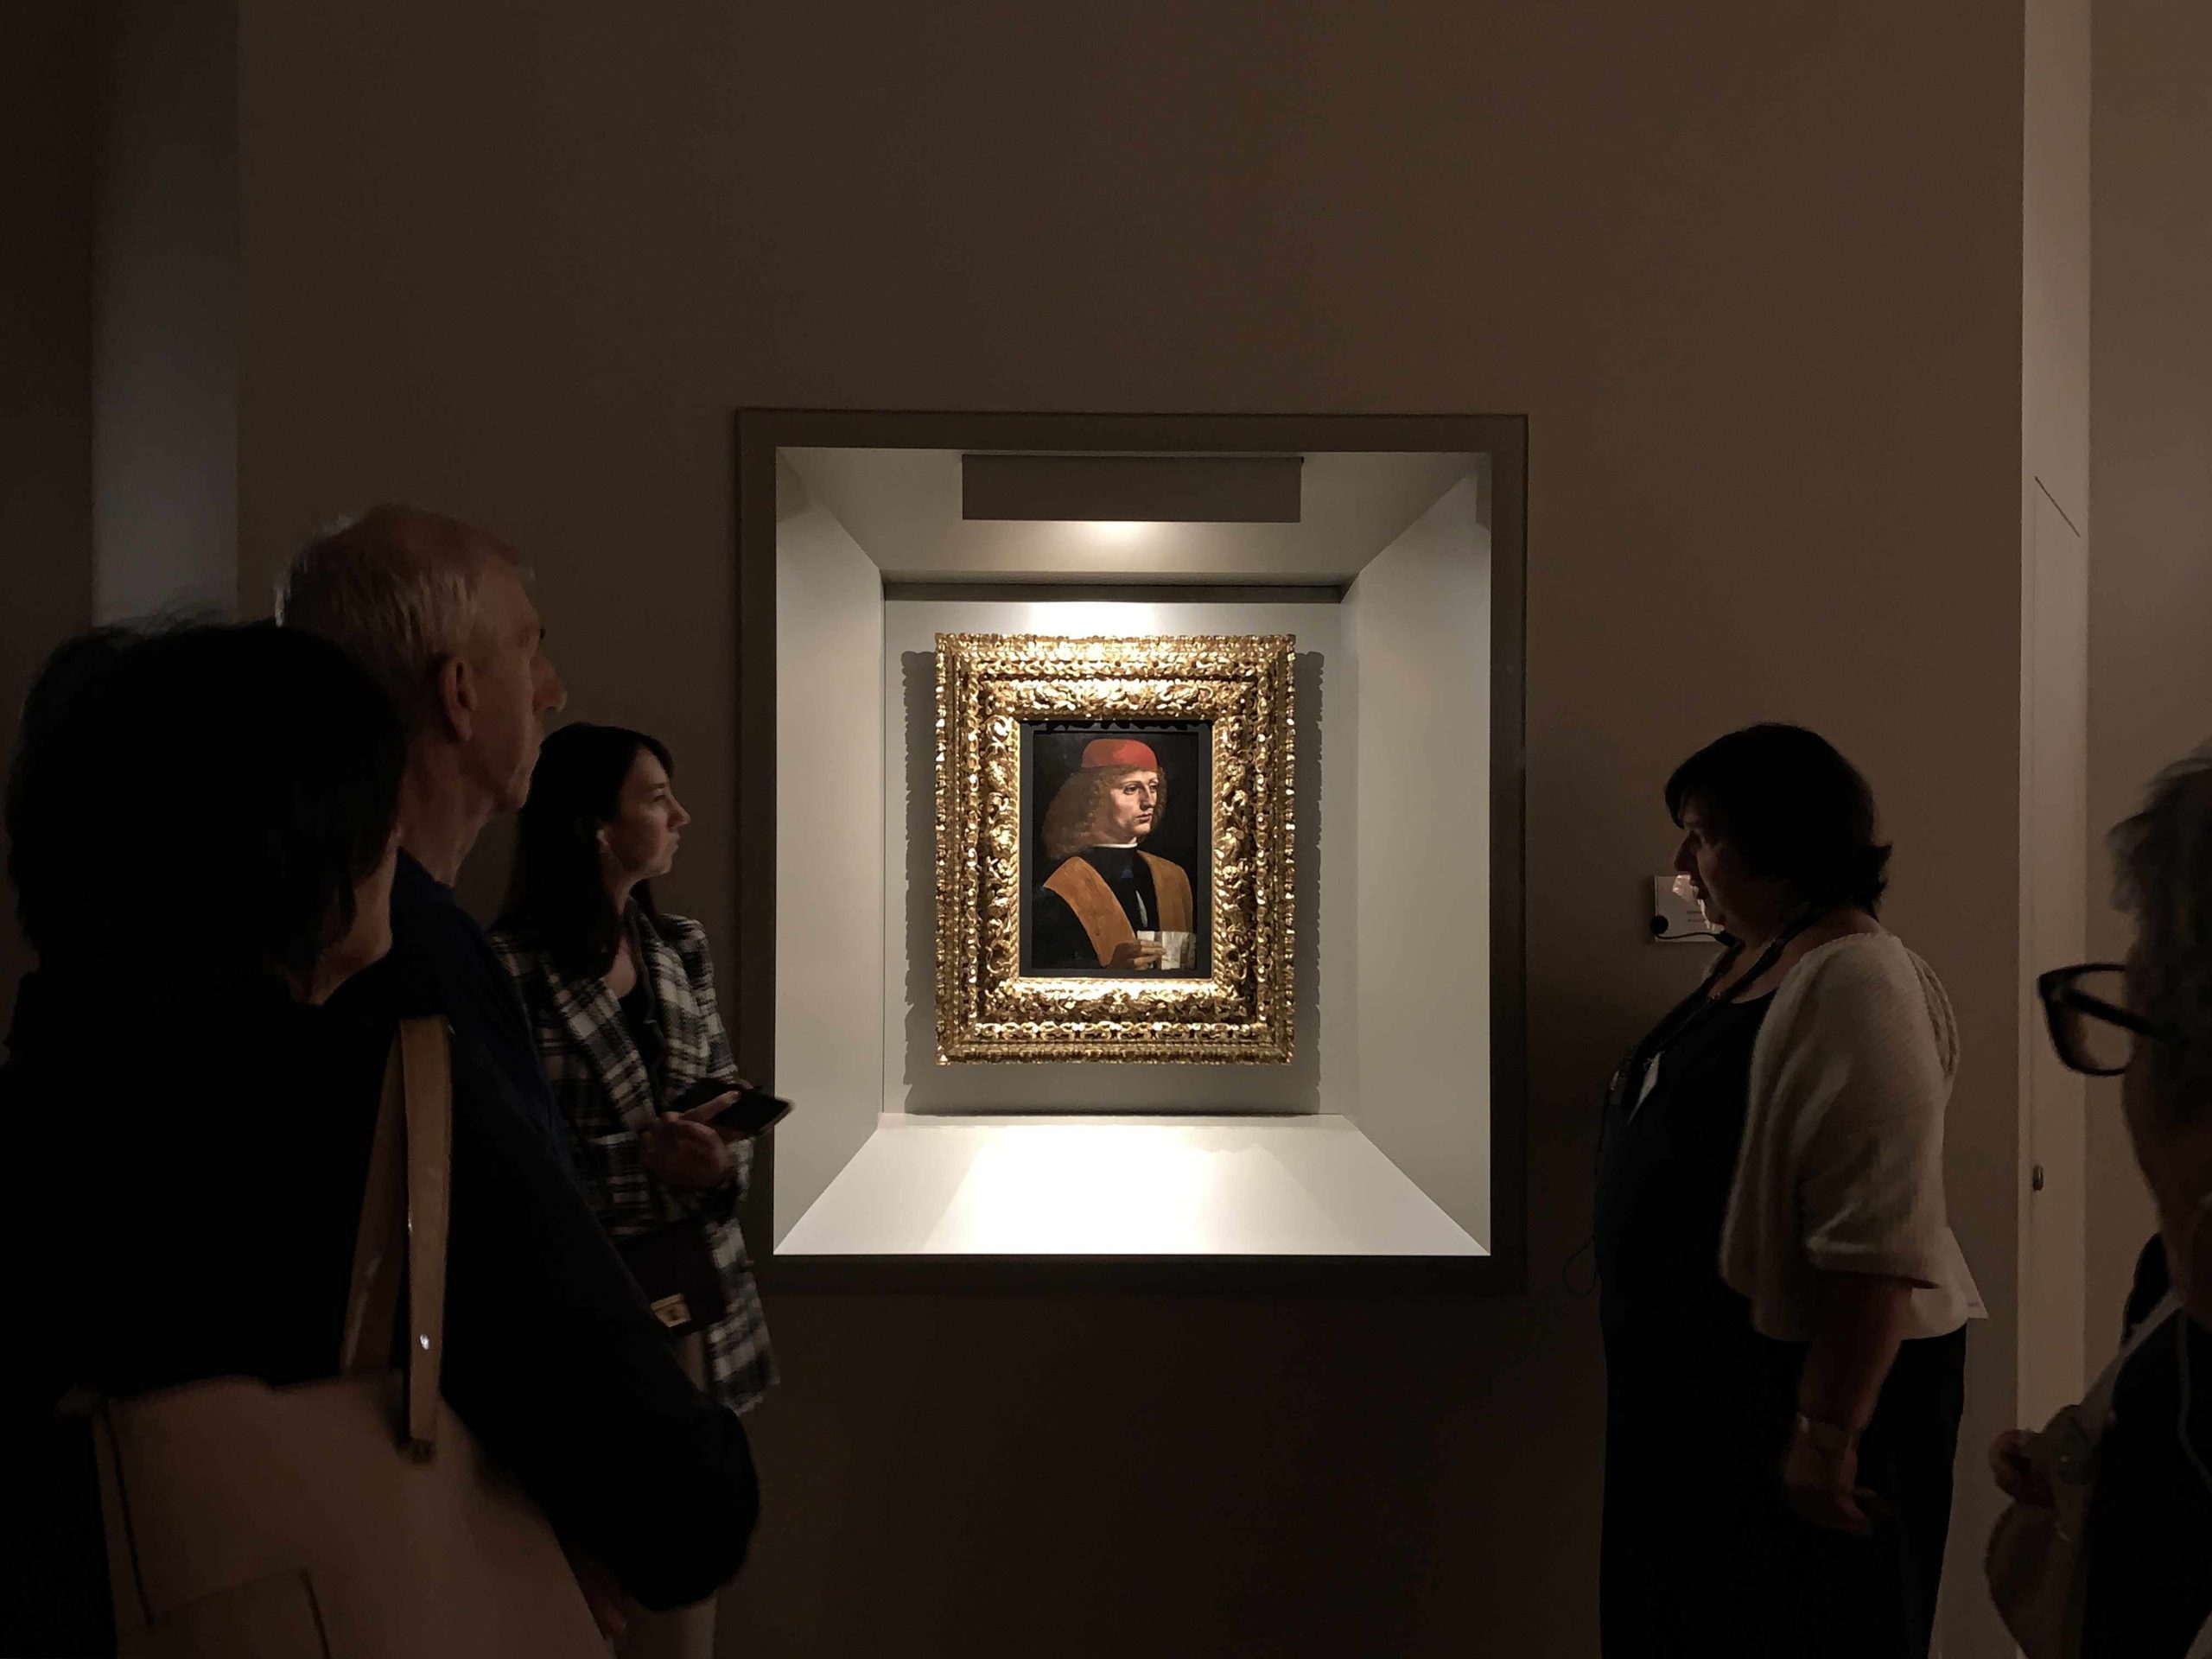 Progetto DescriVedendo Pinacoteca Ambrosiana: "Ritratto di Musico" di Leonardo da Vinci.